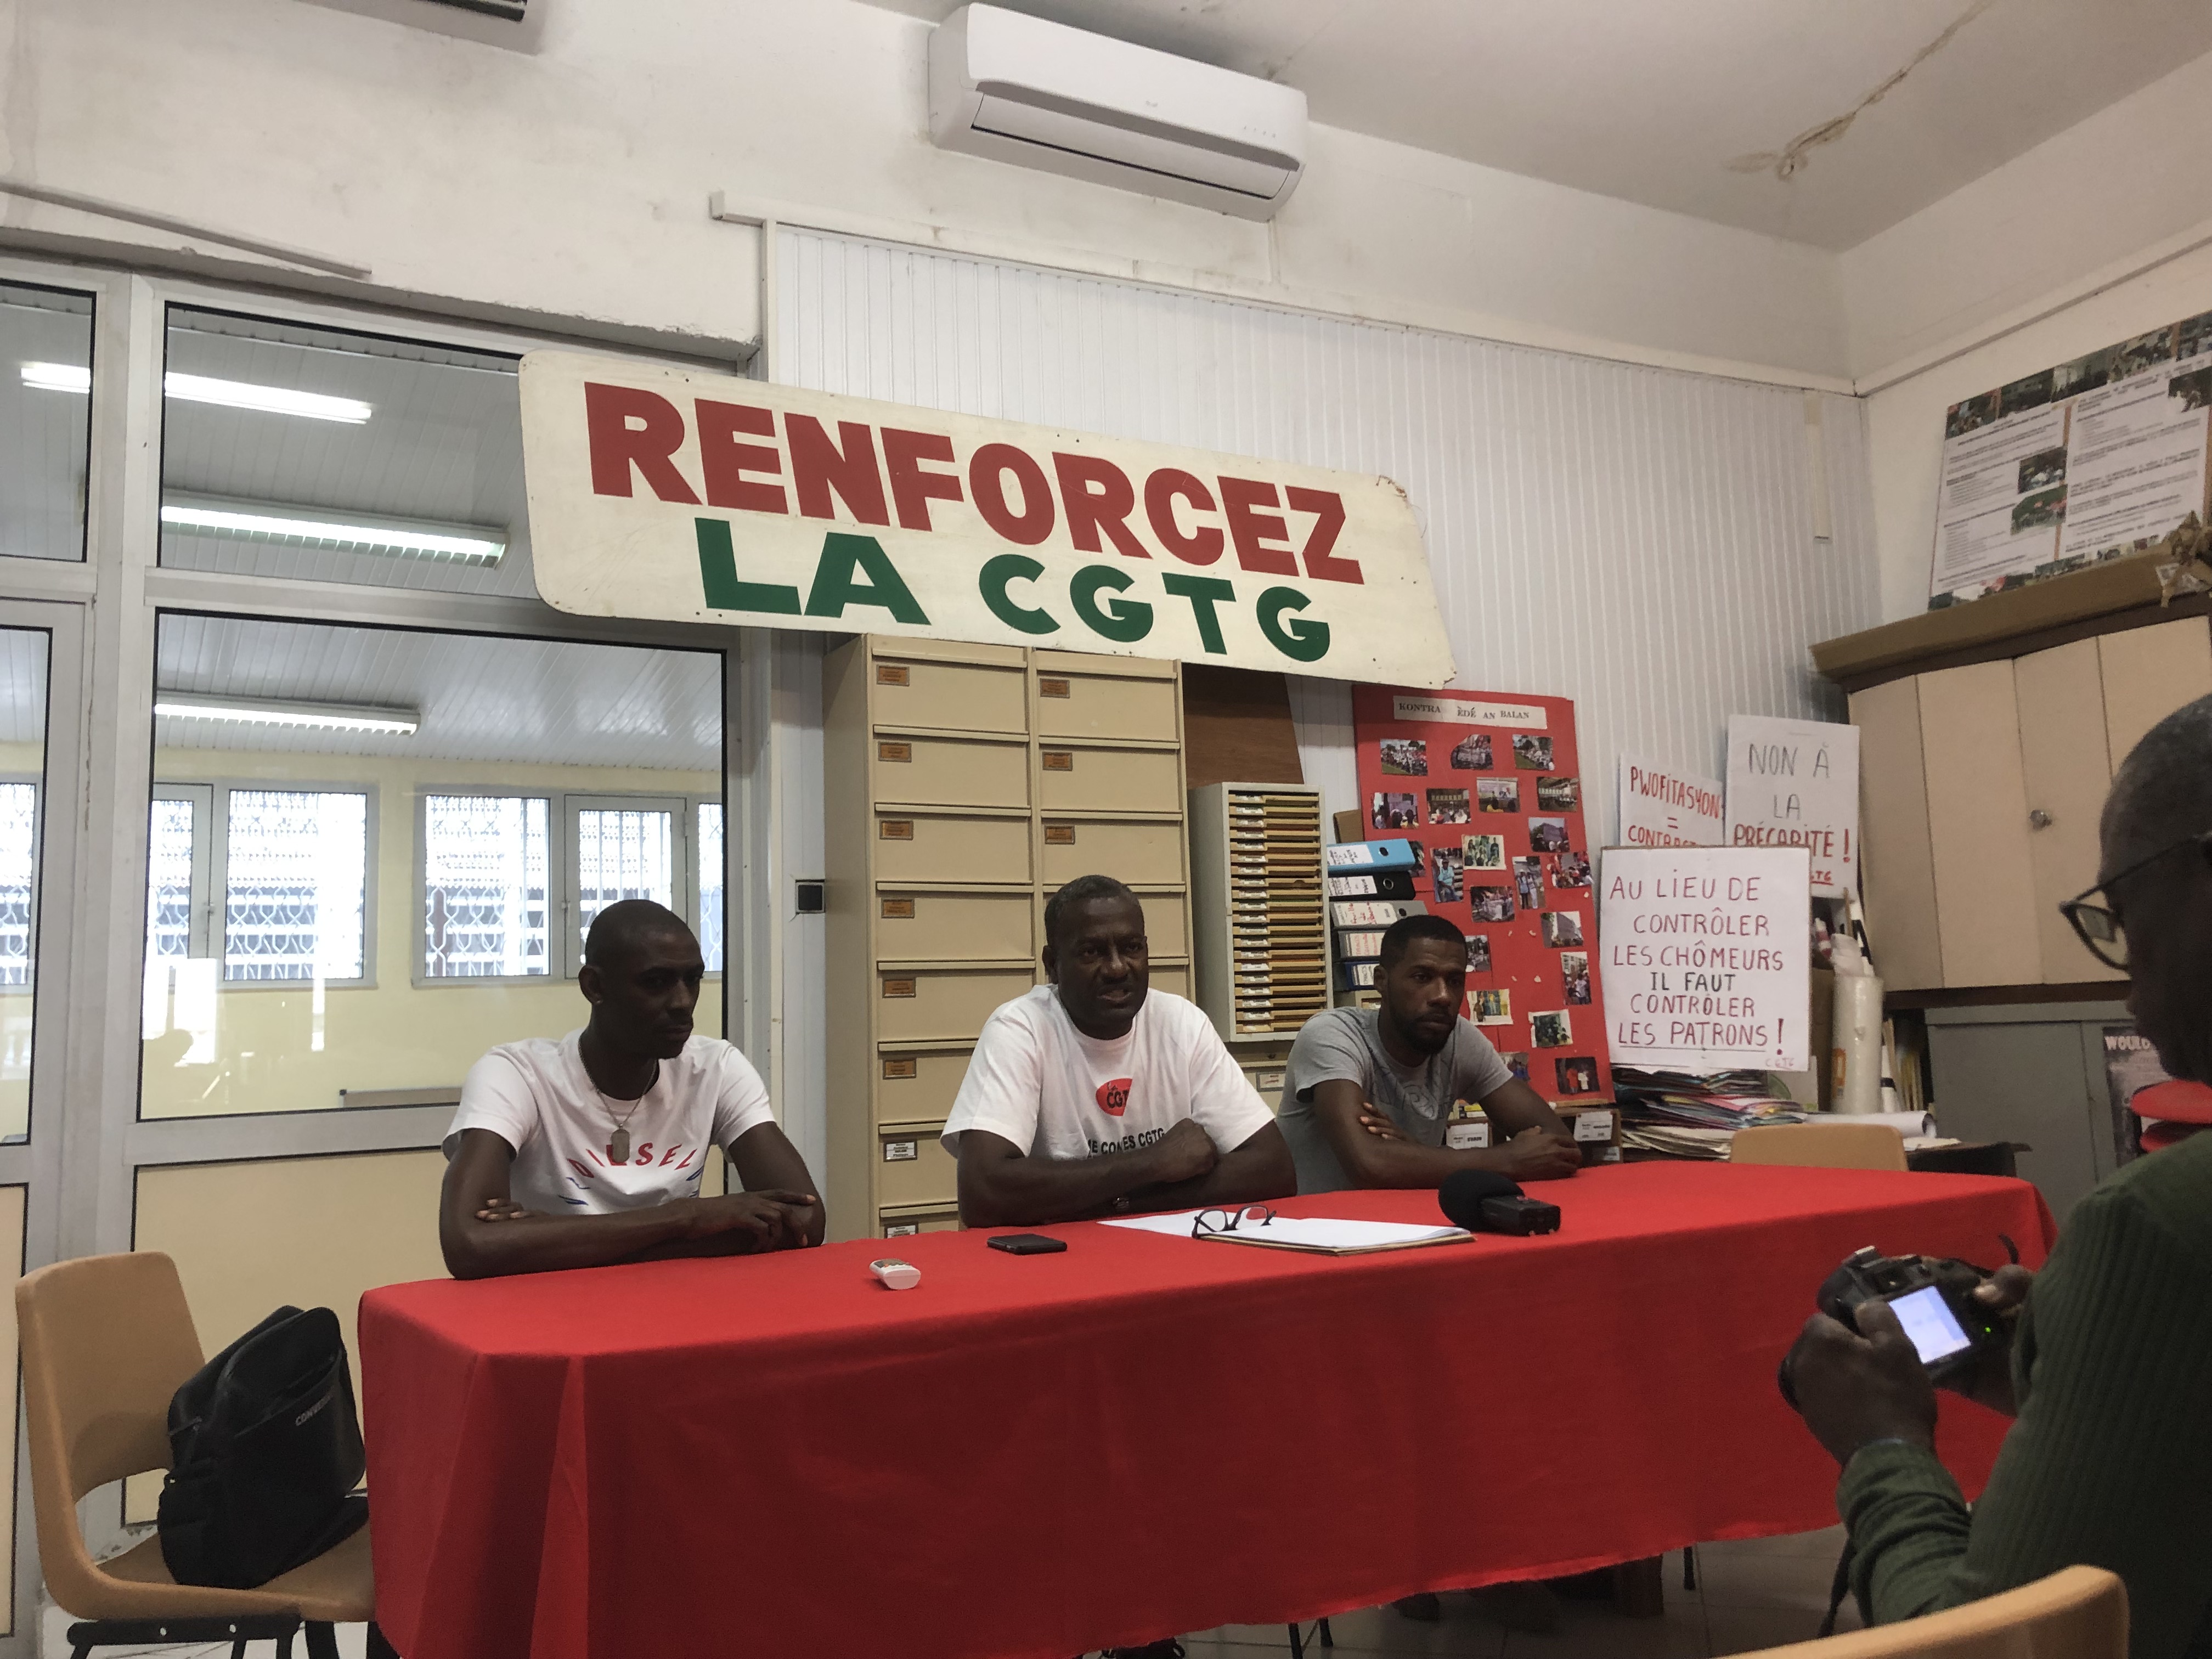     La CGTG dénonce une "machination" au sein d'Antilles Sureté Guadeloupe

